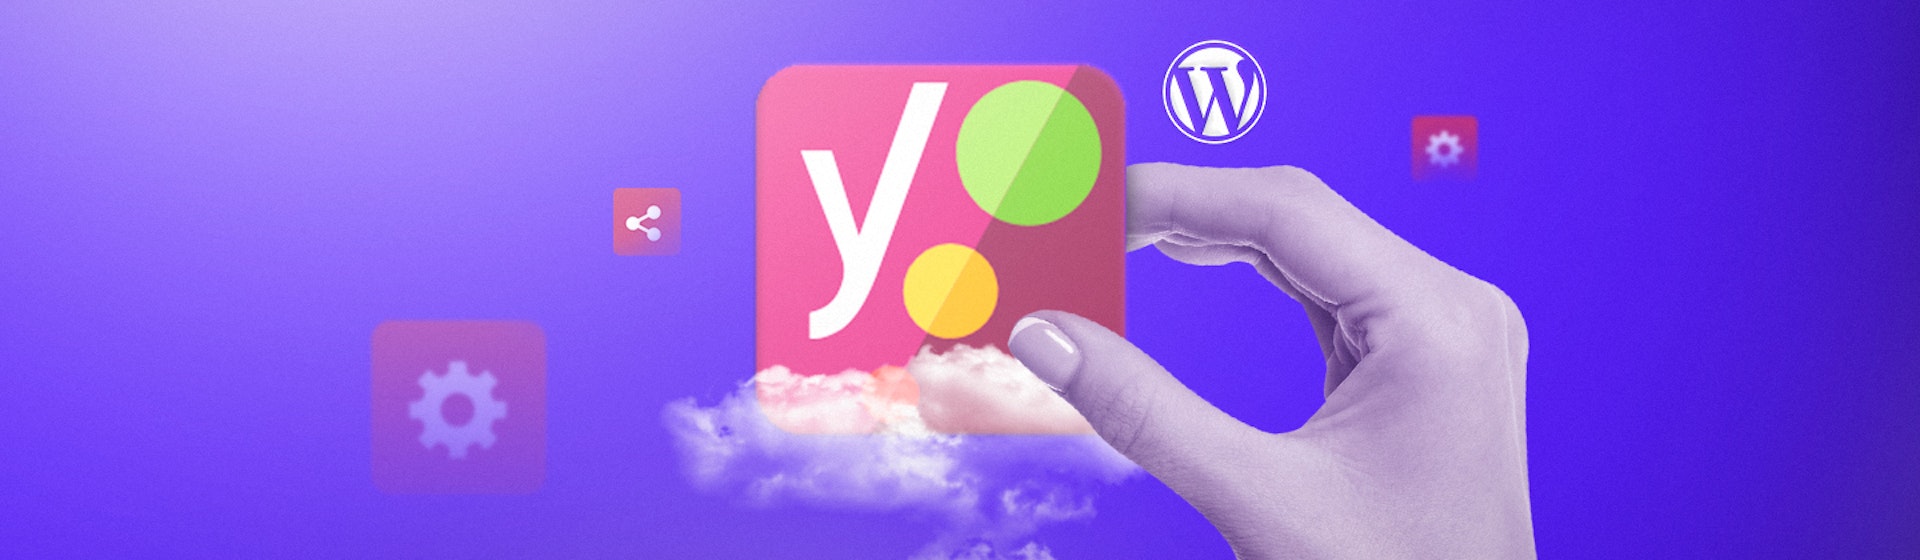 ¿Por qué hacer uso del Yoast SEO de Wordpress? Resultados orgánicos o de pago